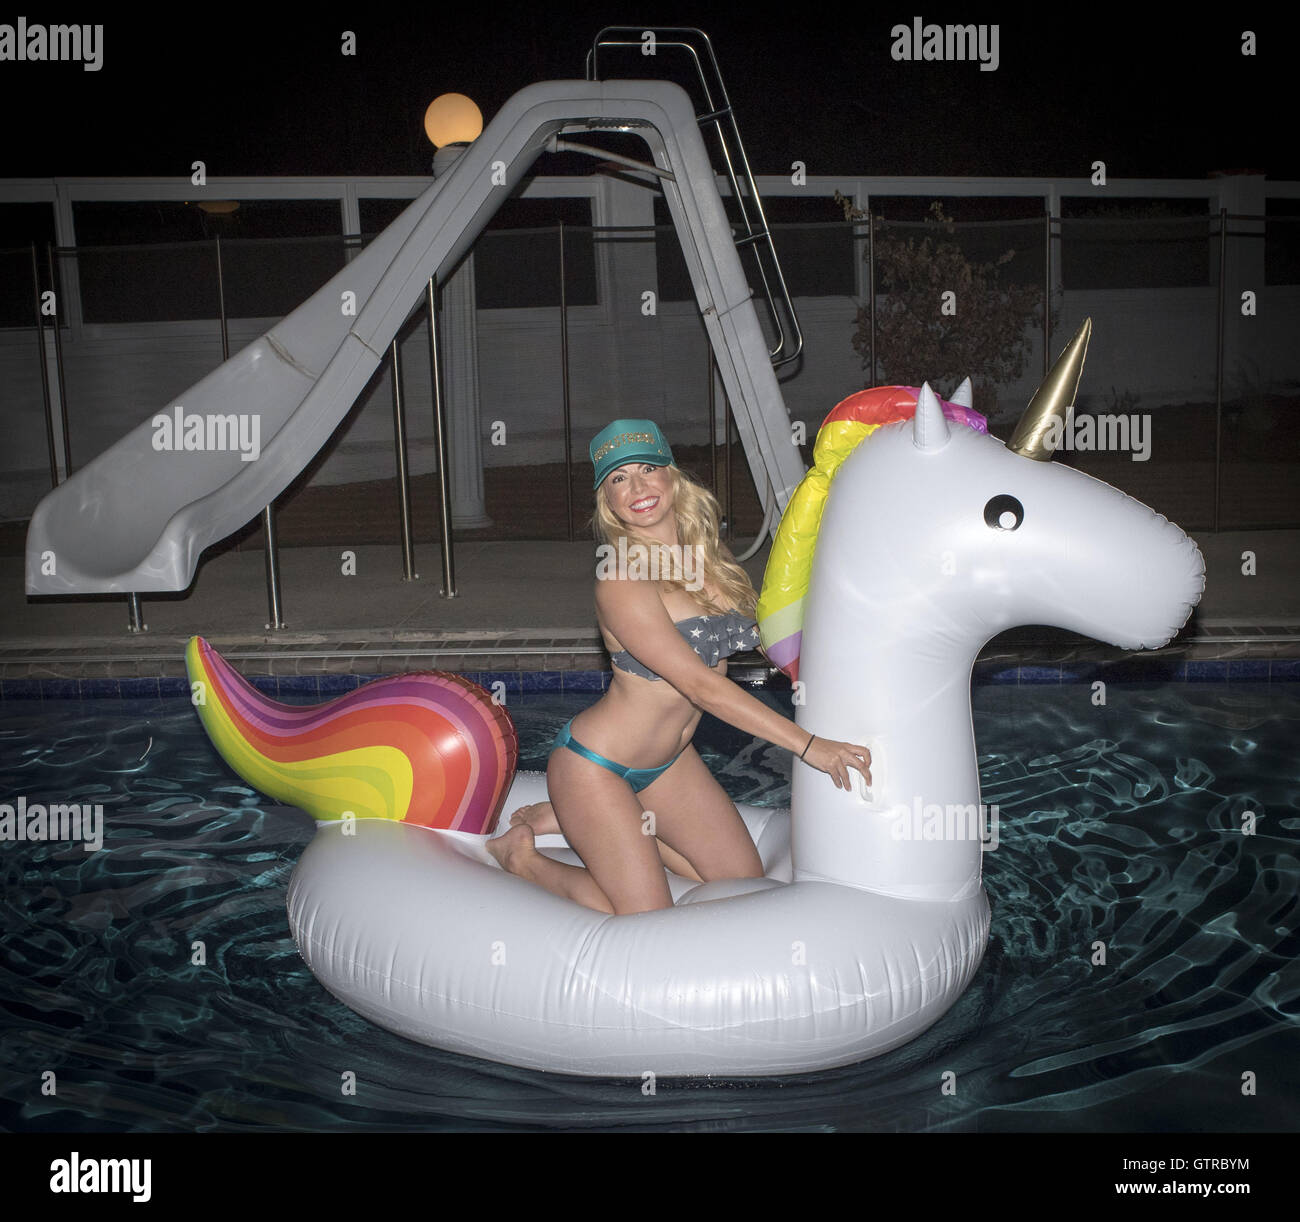 Orange County, Californie, USA. 3e, 2016 Sep. Une jolie jeune femme blonde portant un bikini et trucker cap se trouve sur un inflaitable licorne flottant dans une piscine la nuit. © David Bro/ZUMA/Alamy Fil Live News Banque D'Images